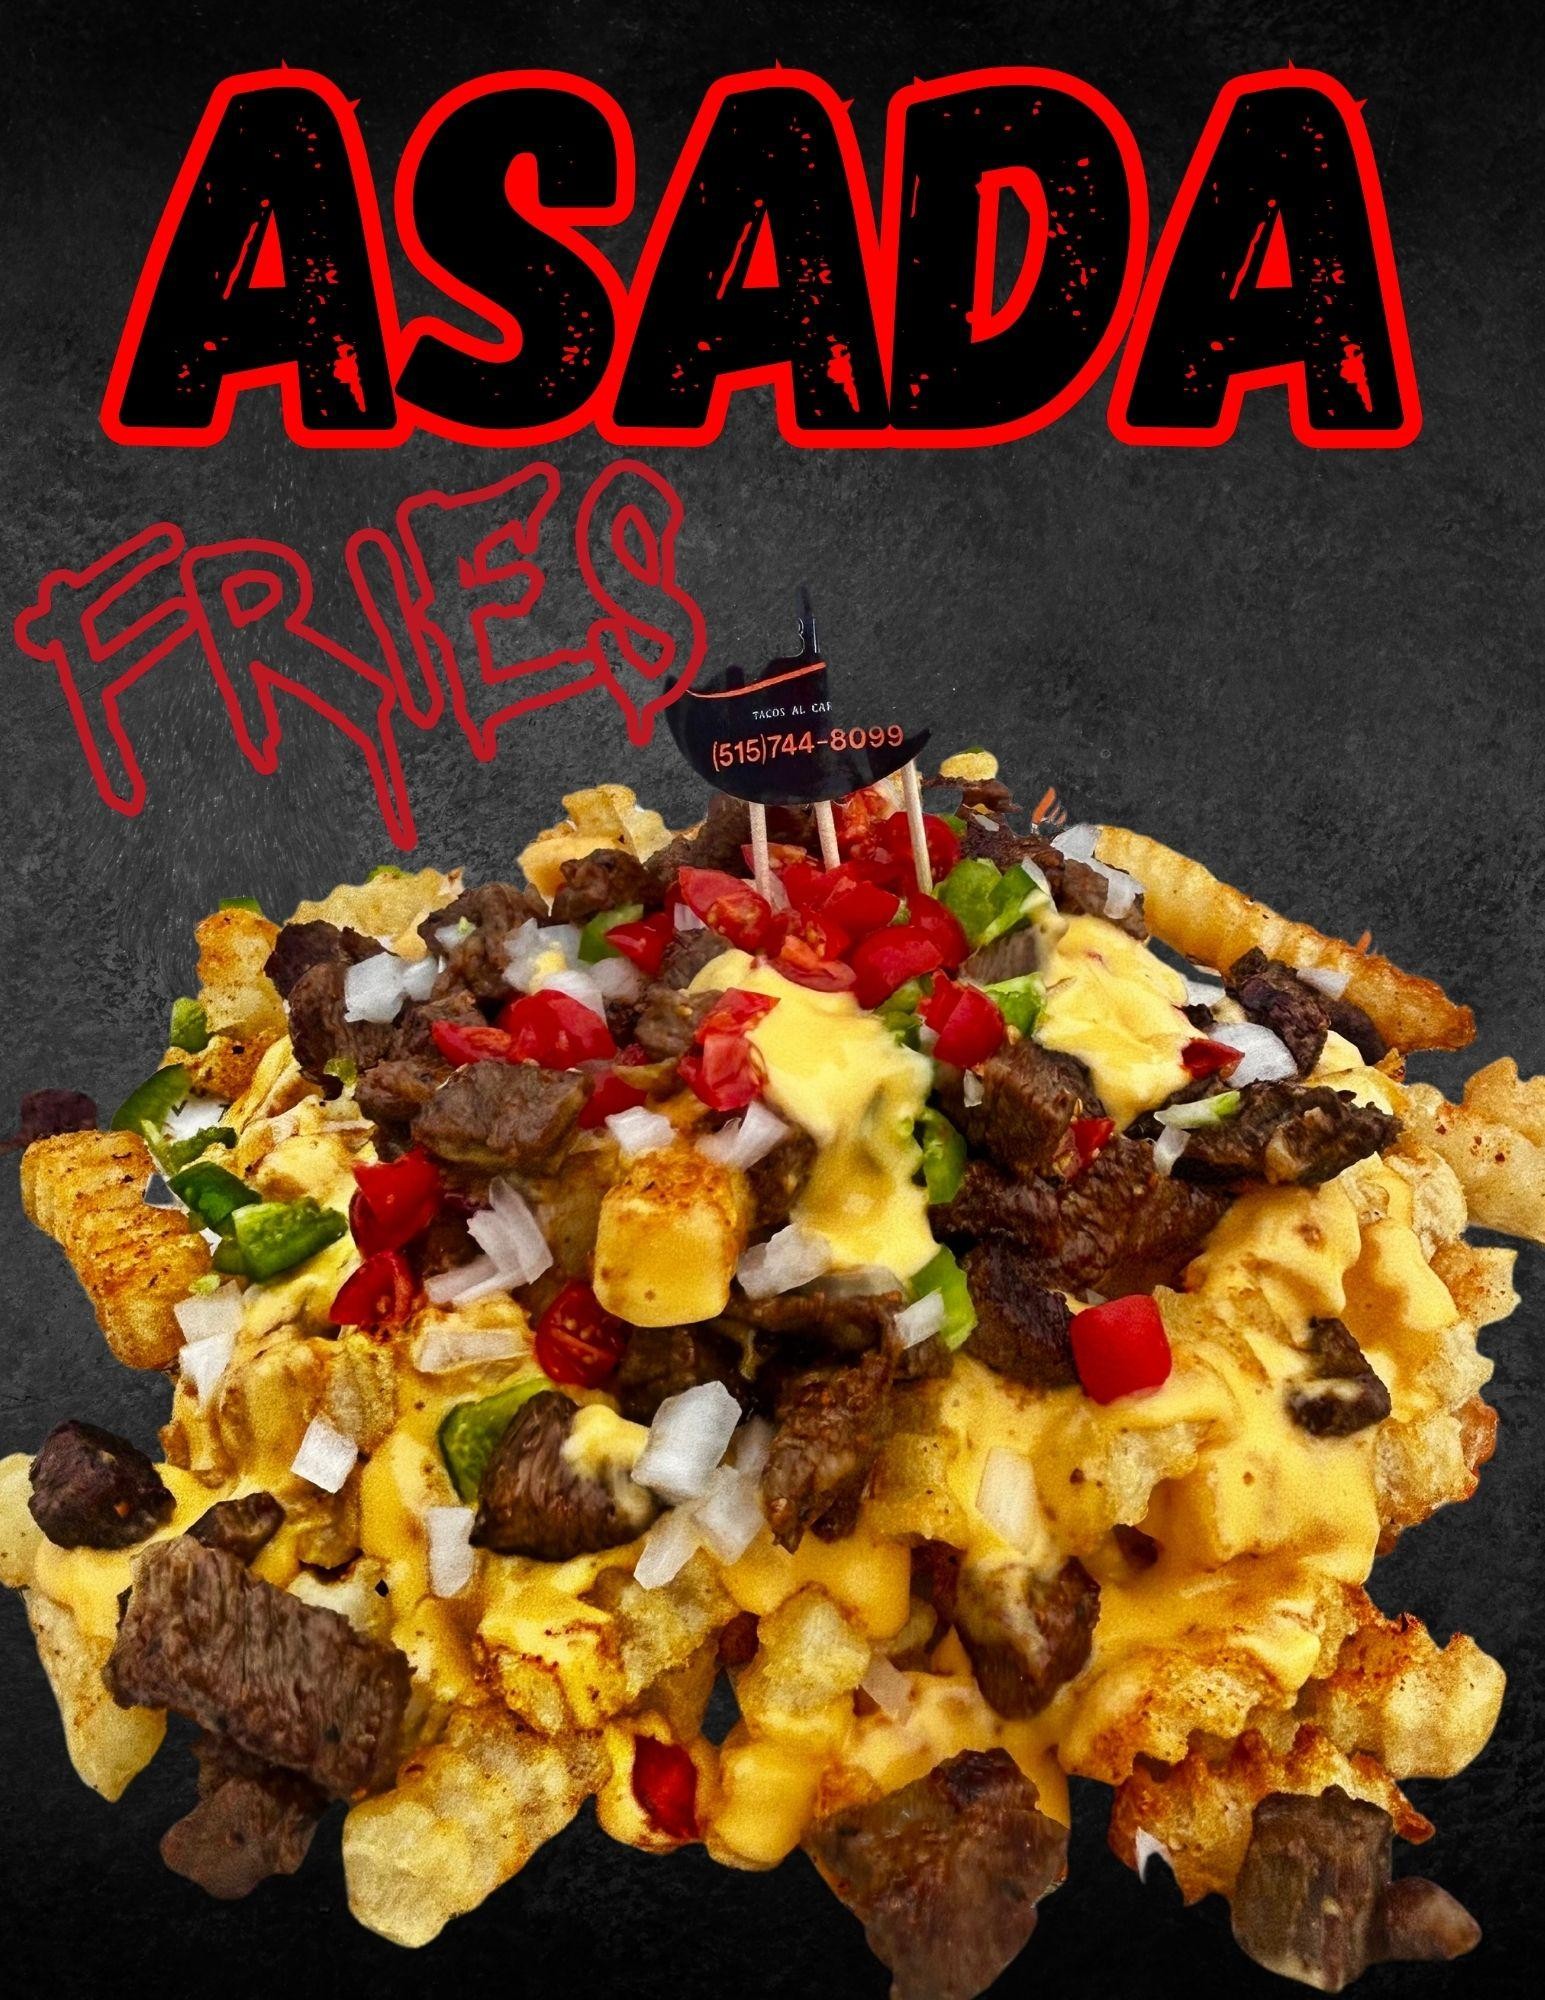 Asada Fries